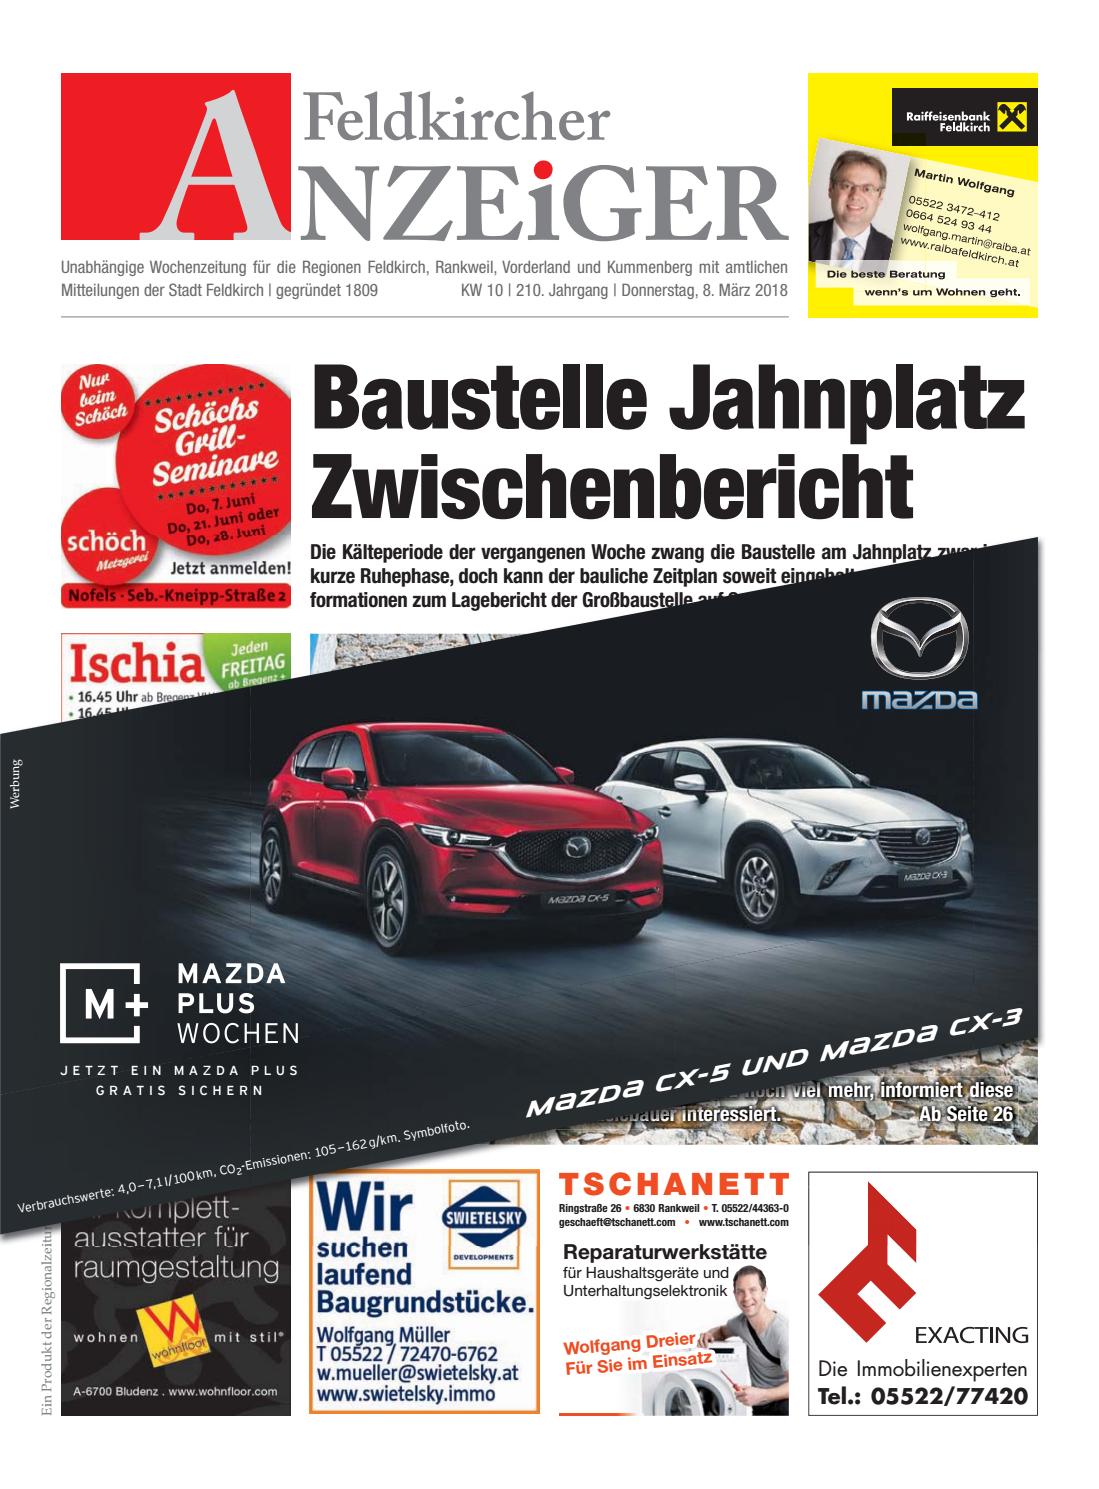 Alte Leiter Kaufen Best Of Feldkircher Anzeiger 10 by Regionalzeitungs Gmbh issuu